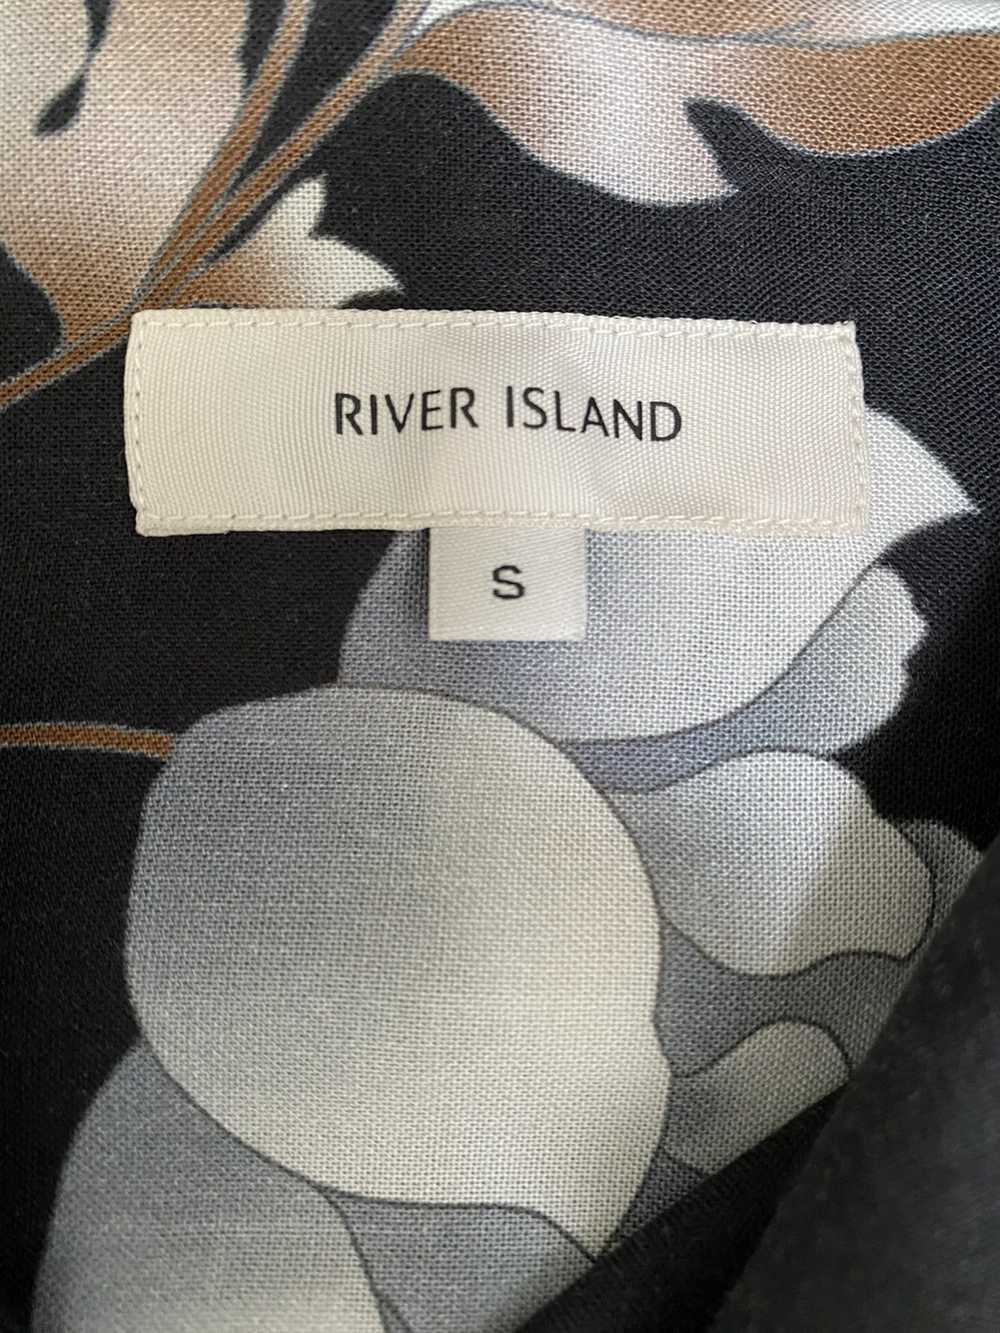 River Island Floral shirt black x vintage aesthet… - image 3